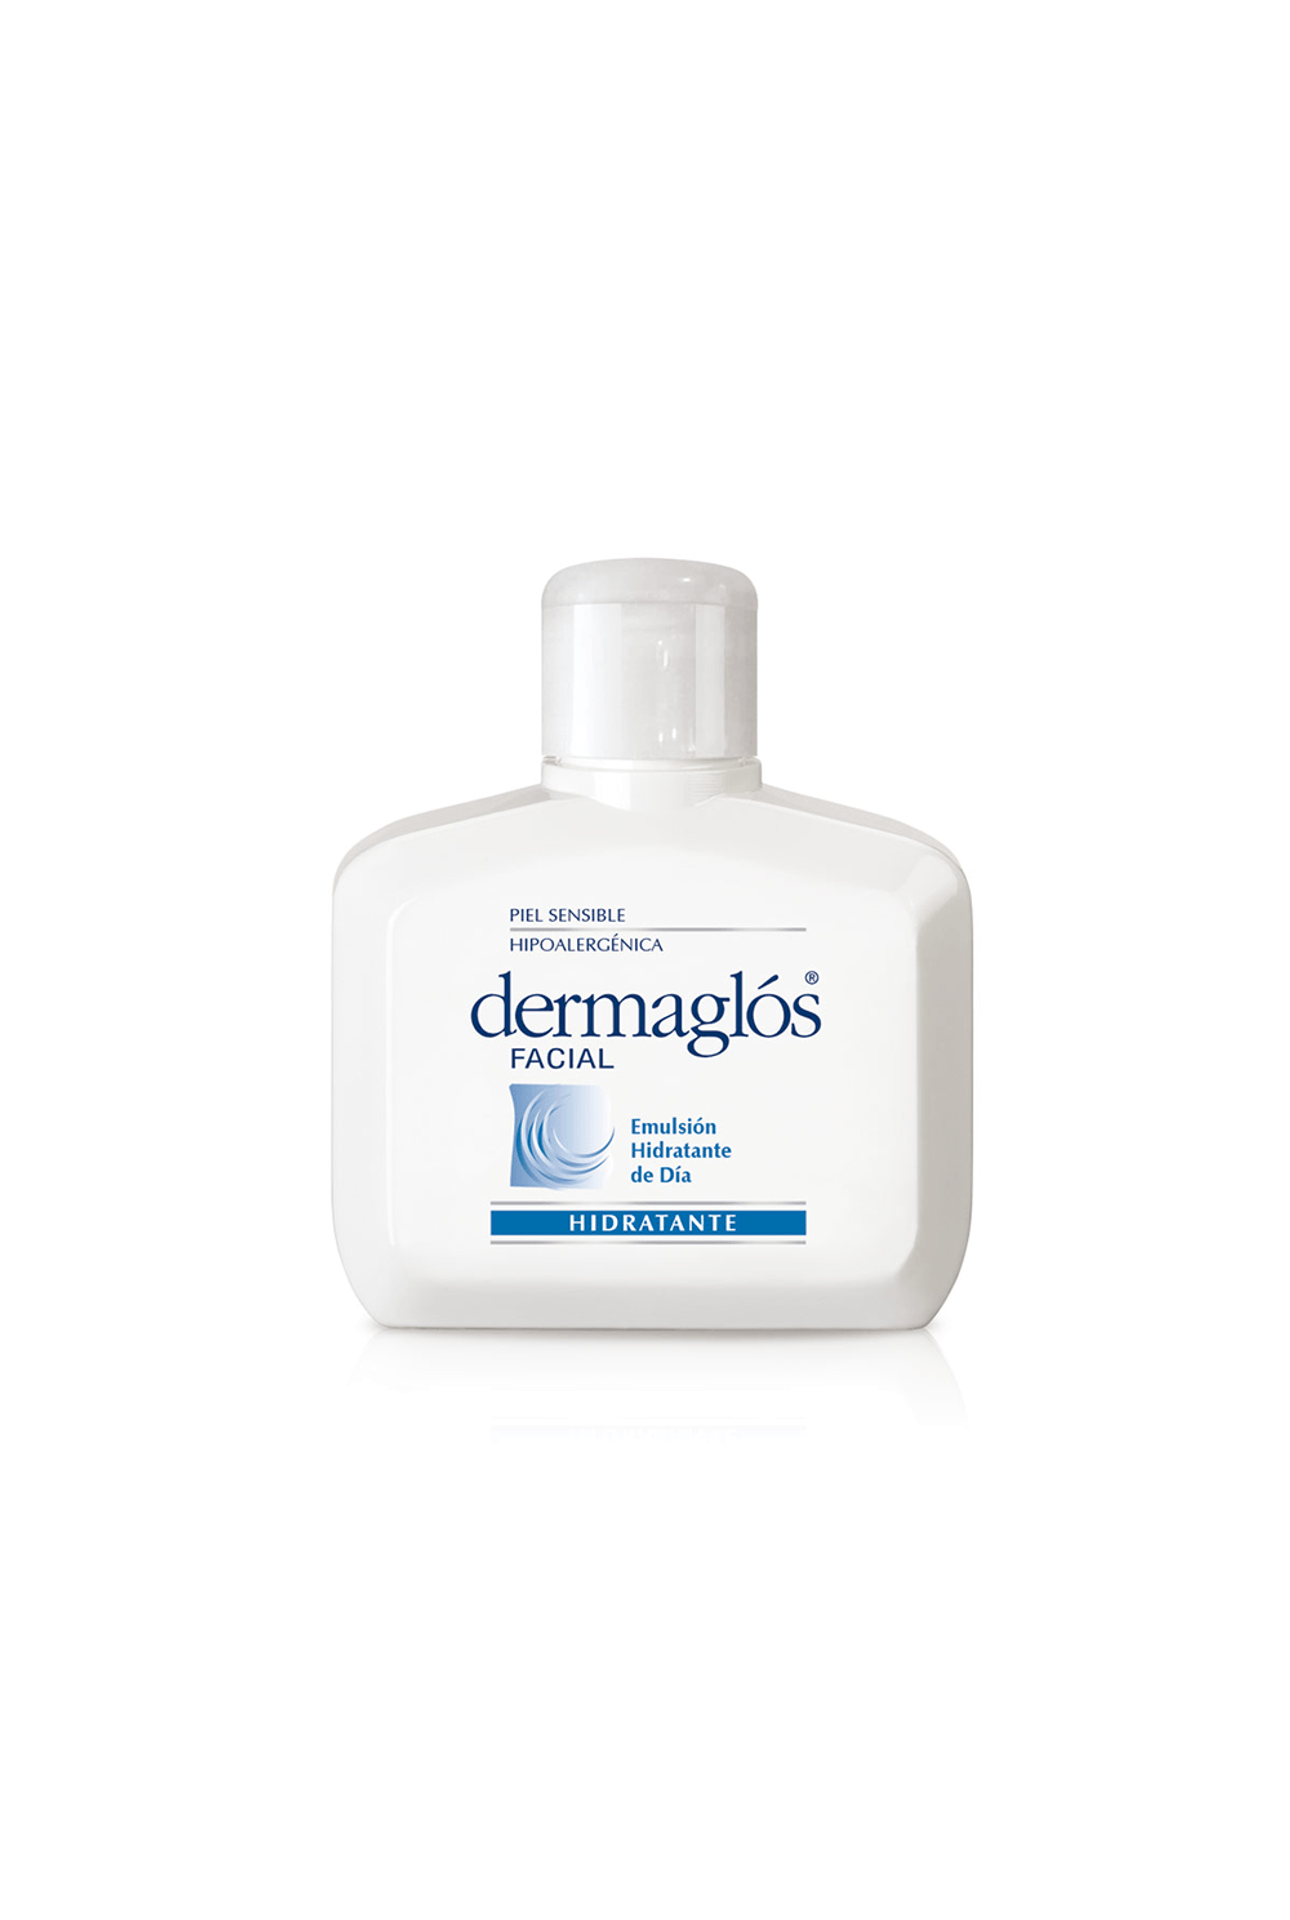 28744_Dermaglos-Facial-Emulsion-Hidratante-de-Dia-Piel-Normal-a-Mixta-x-75-ml_img1-7793742007903